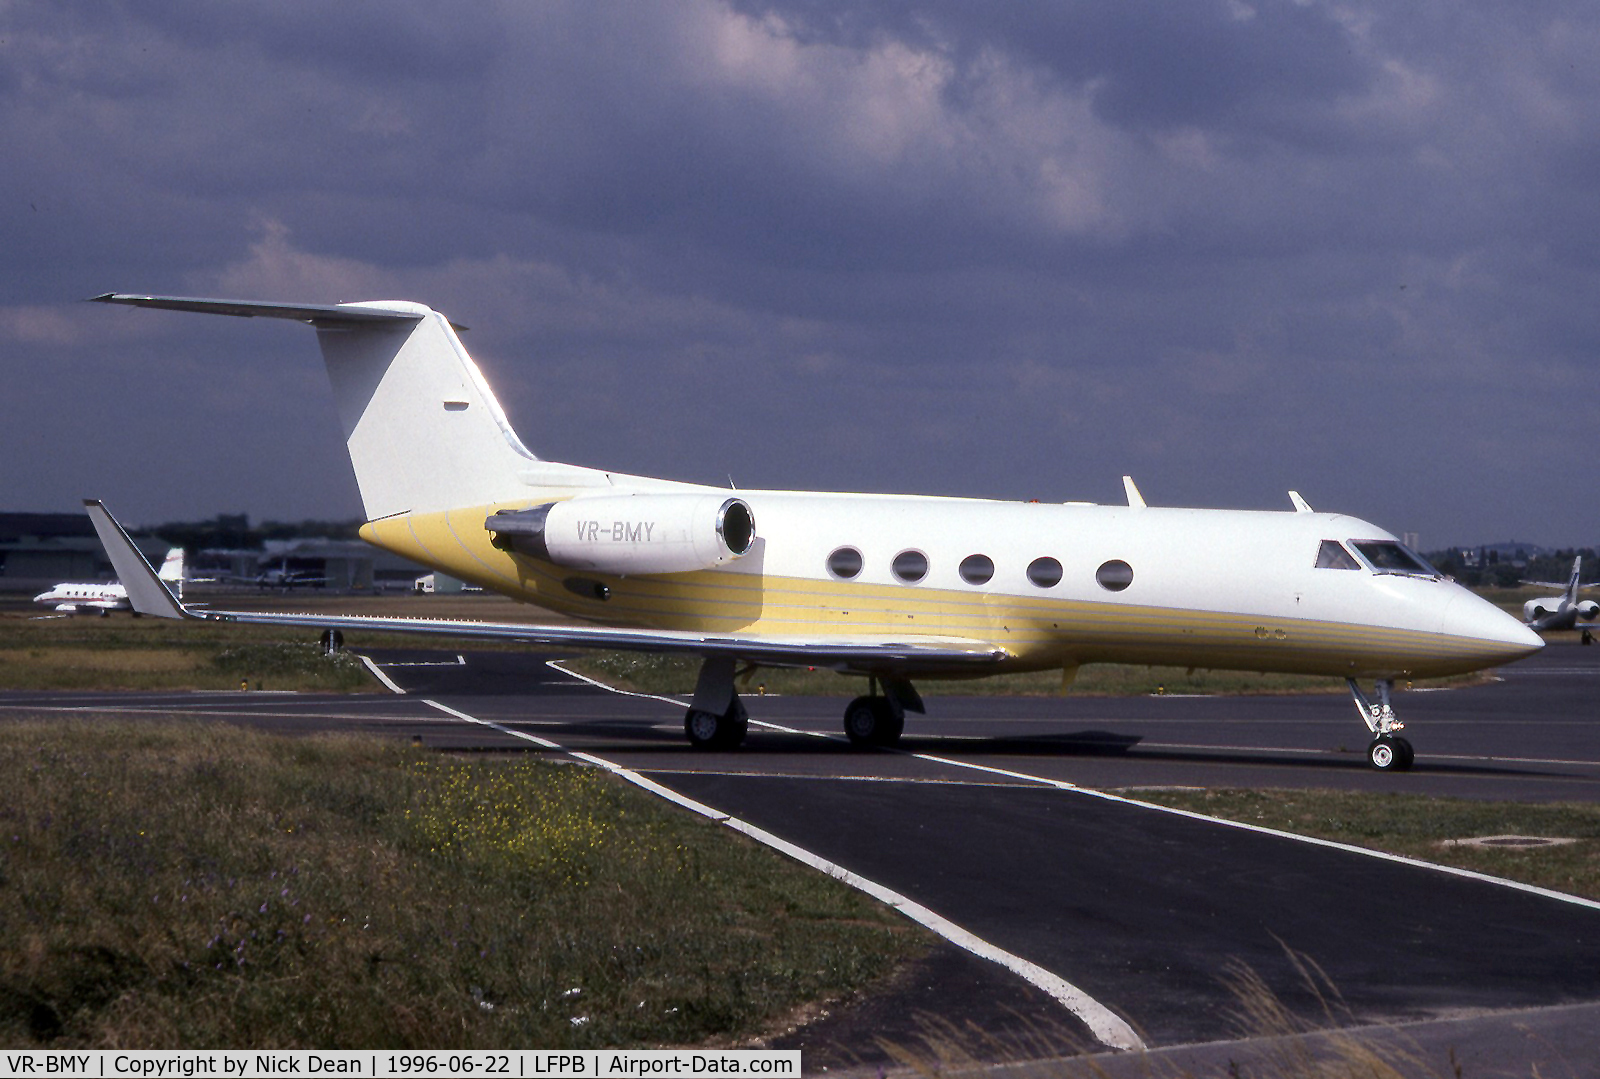 VR-BMY, 1985 Grumman G1159A Gulfstream III C/N 463, Paris le Bourget